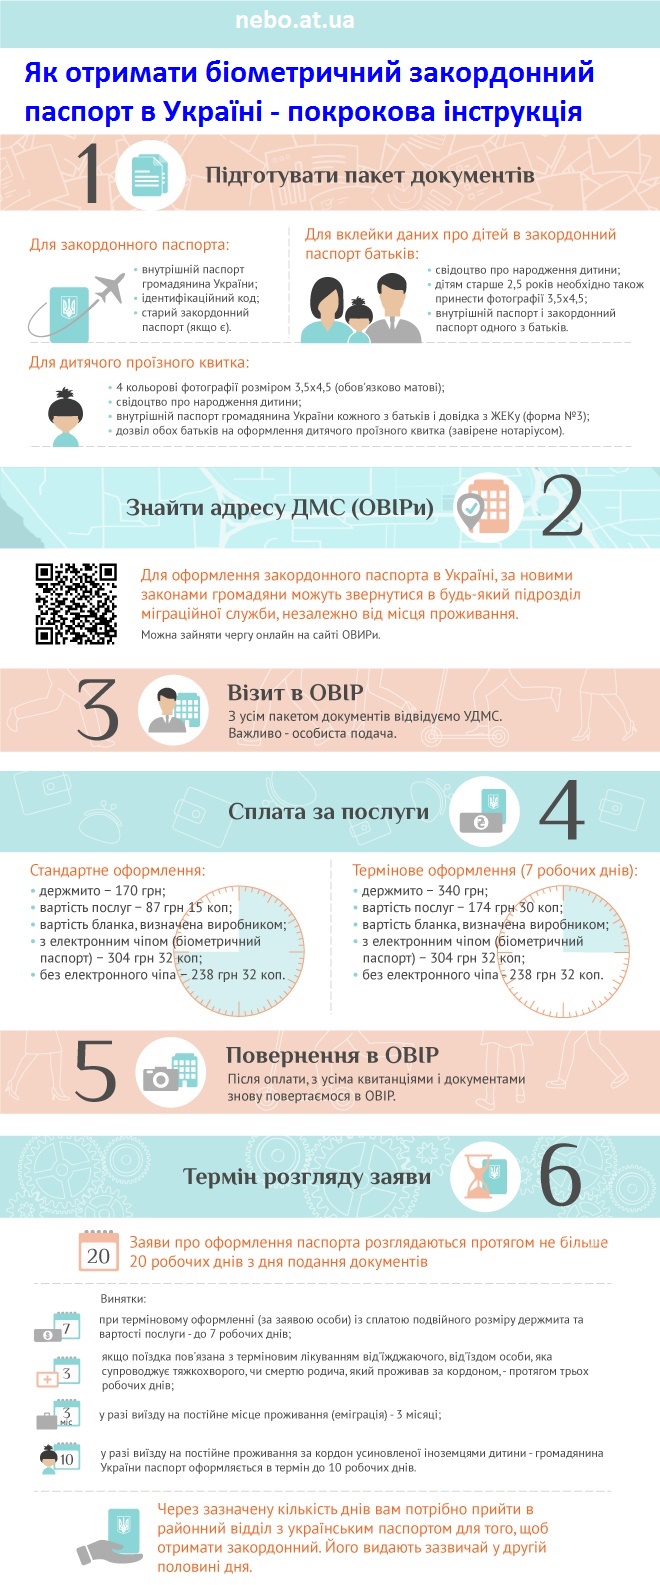 Інфографіка - як отримати закордонний біометричний паспорт в Україні, покрокова інструкція